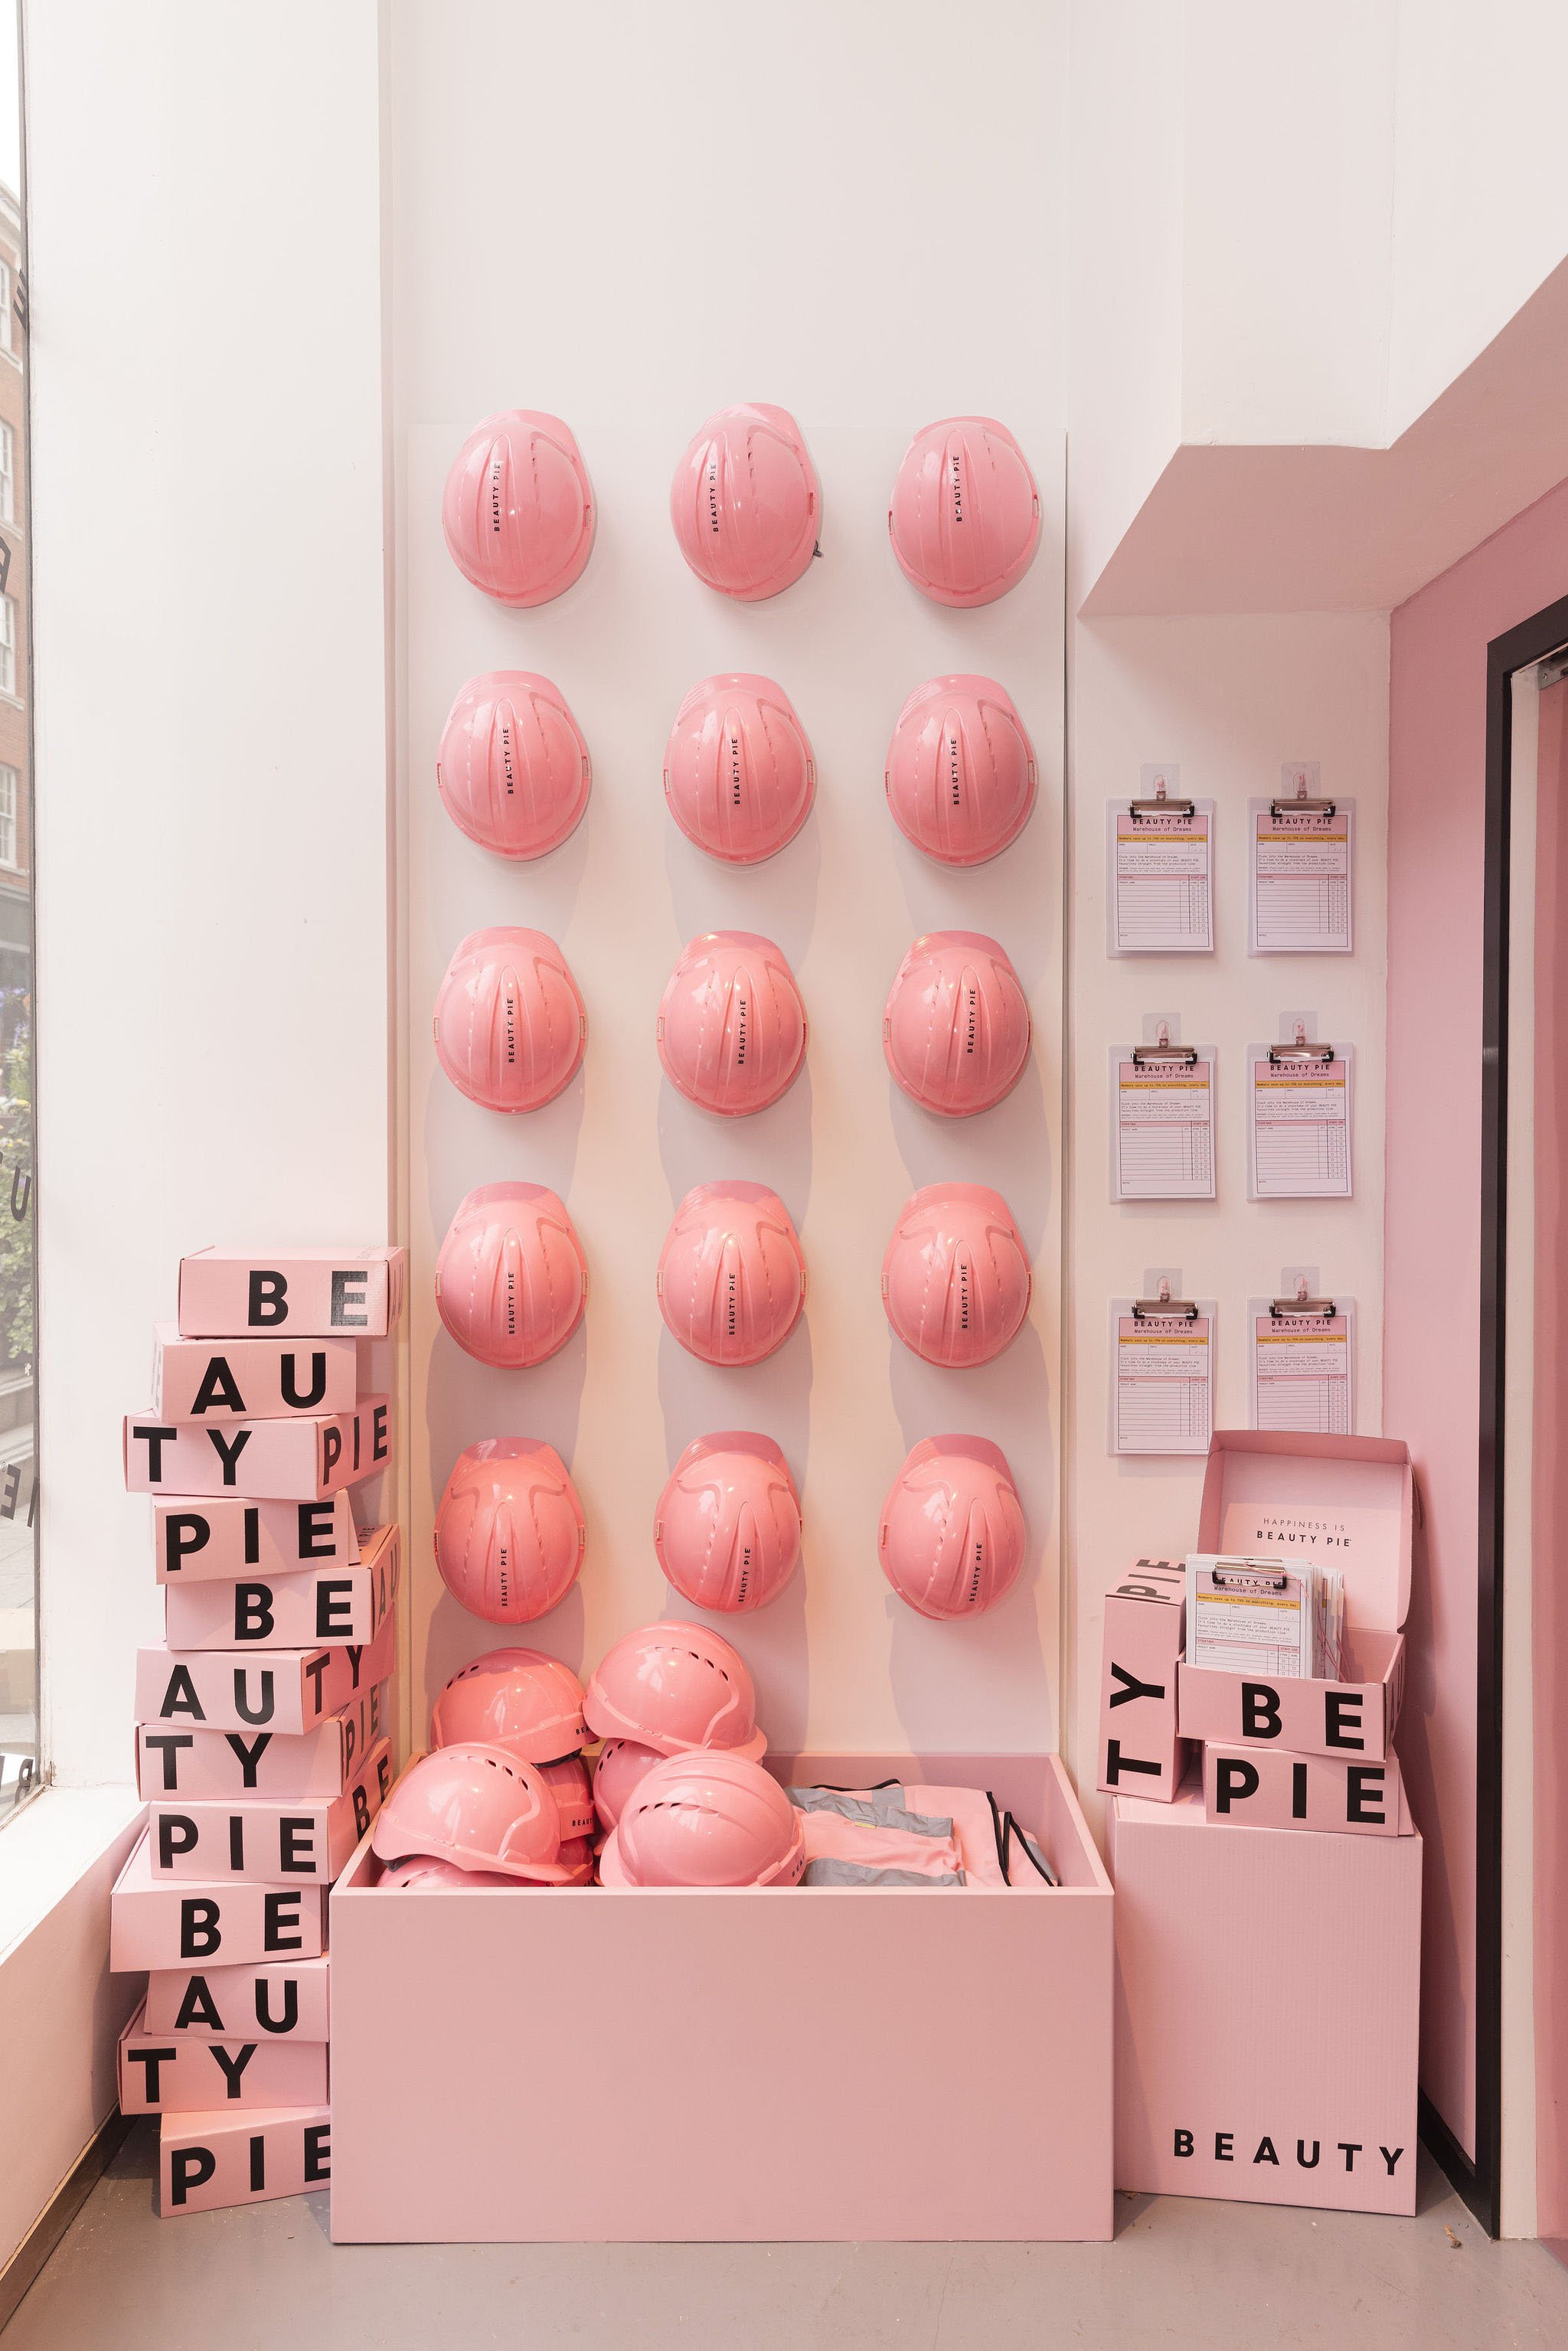 Beauty Pie - Warehouse of Dreams - Pop Up Shop Agency